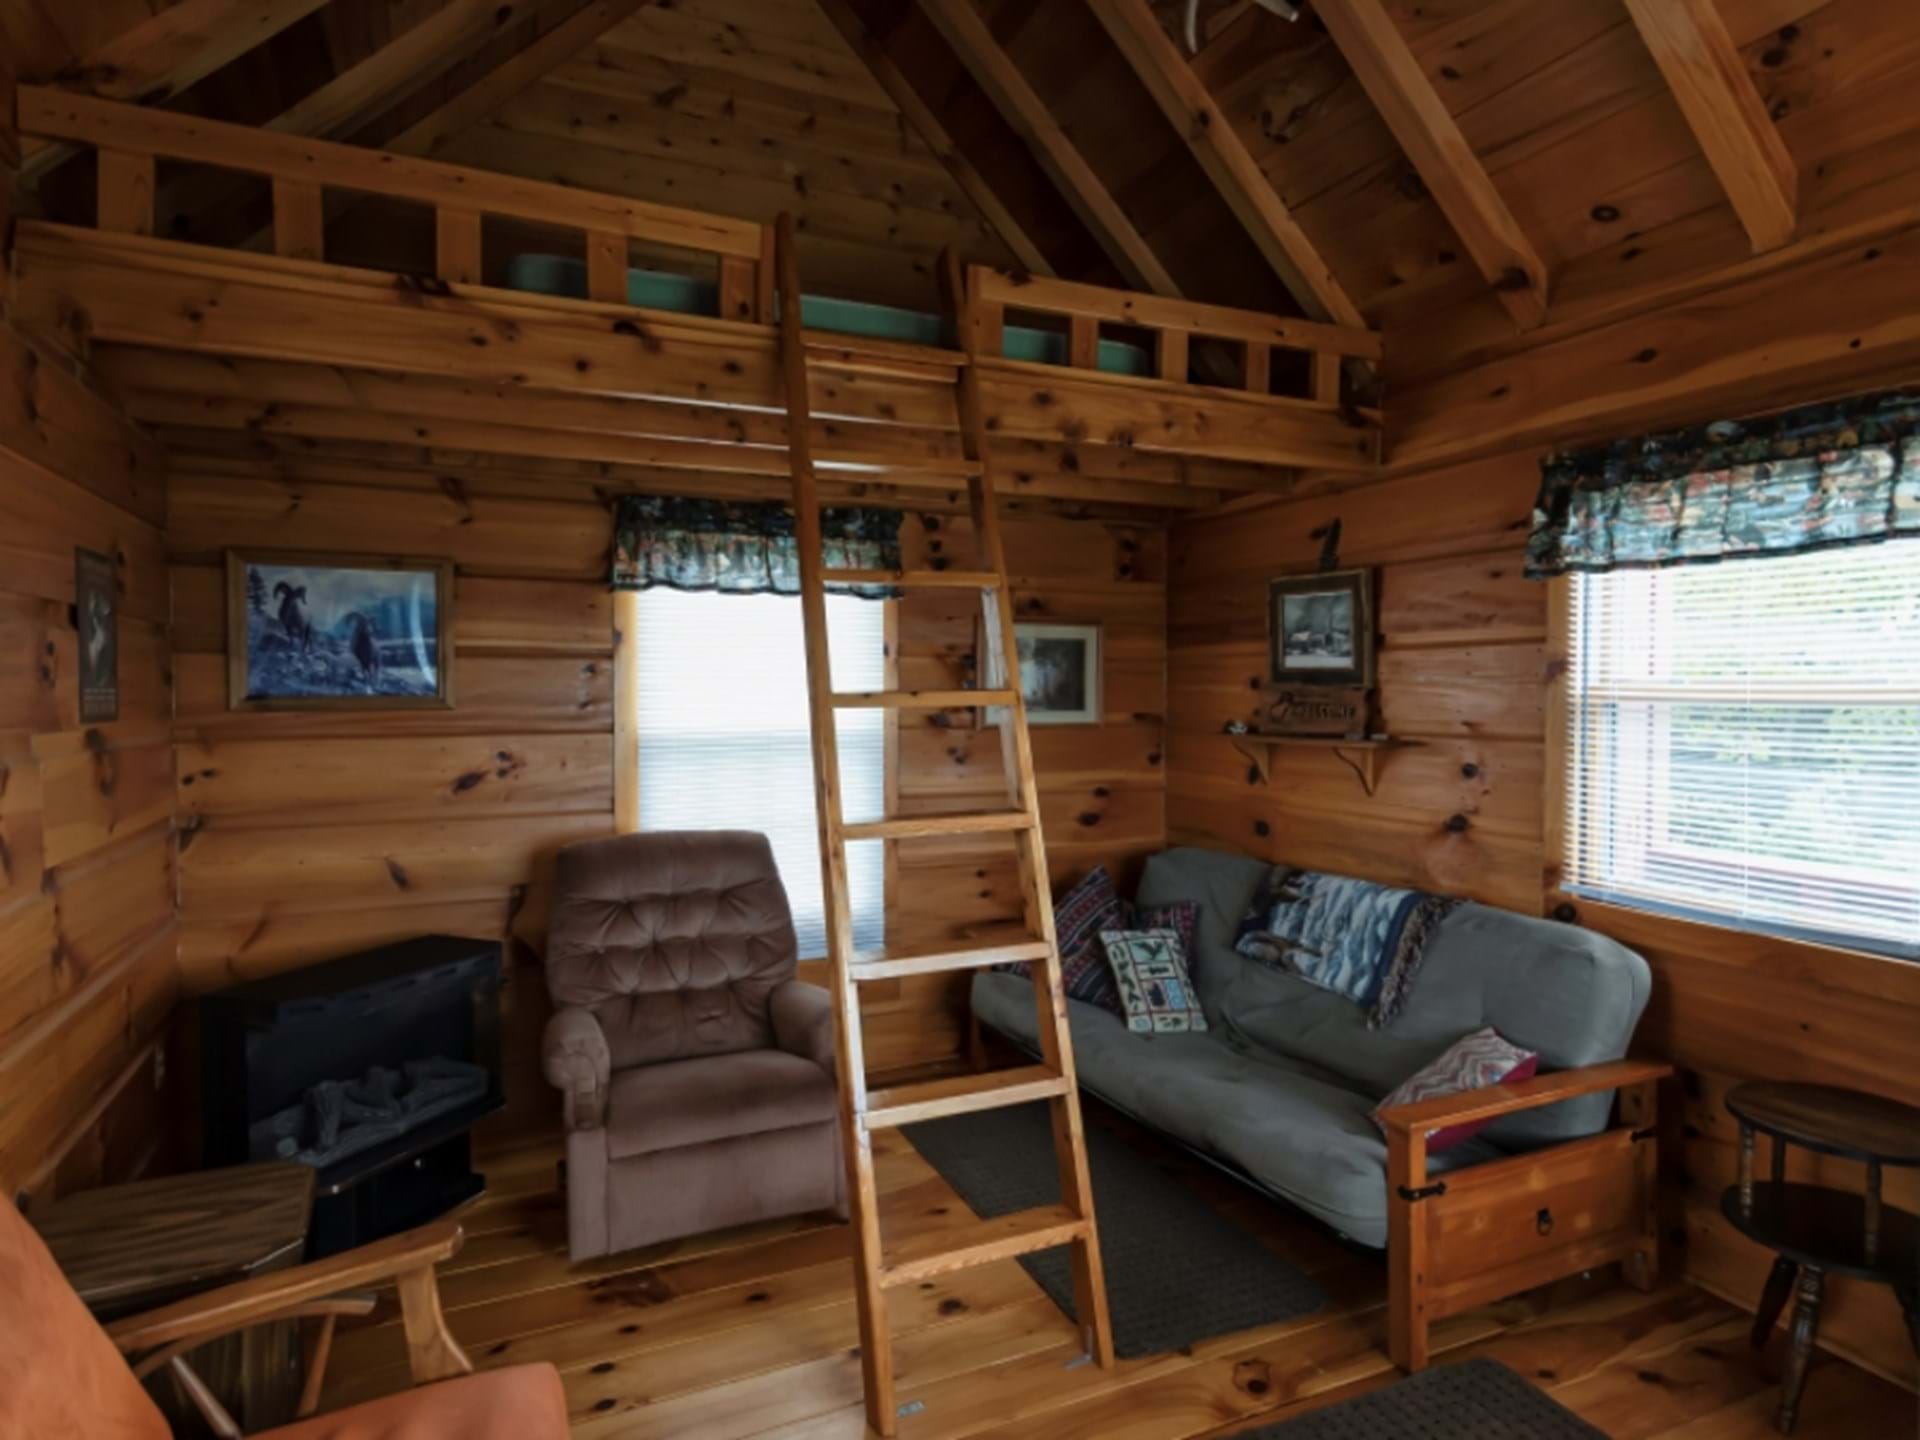 Inside Cabin-Loft